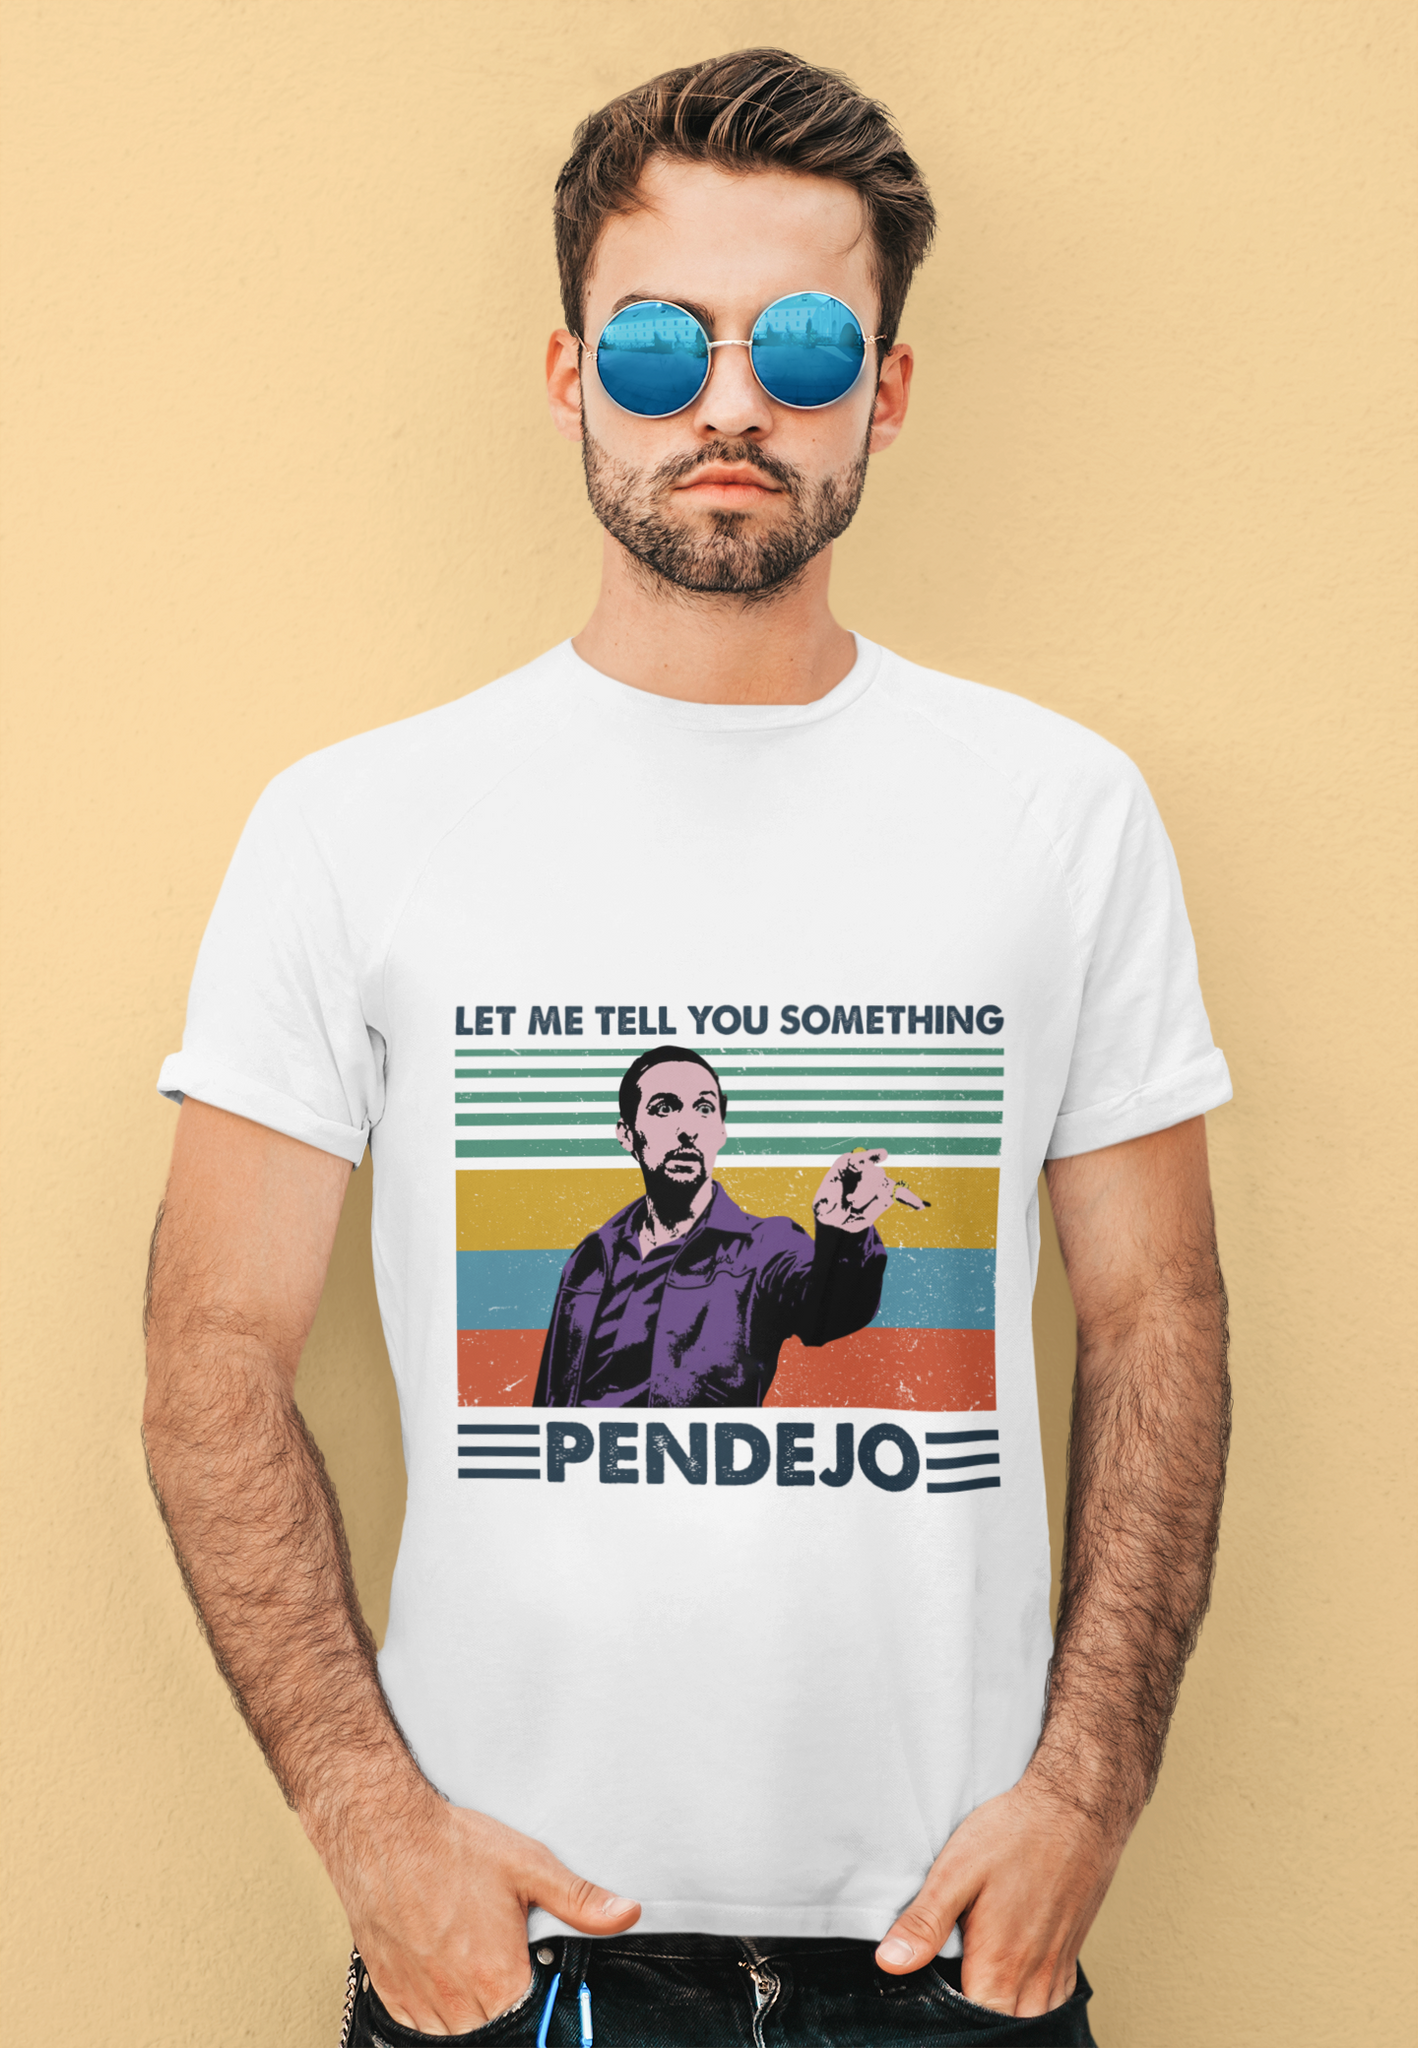 The Big Lebowski Vintage Tshirt, Let Me Tell You Something Pendejo Shirt, Jesus Quintana T Shirt